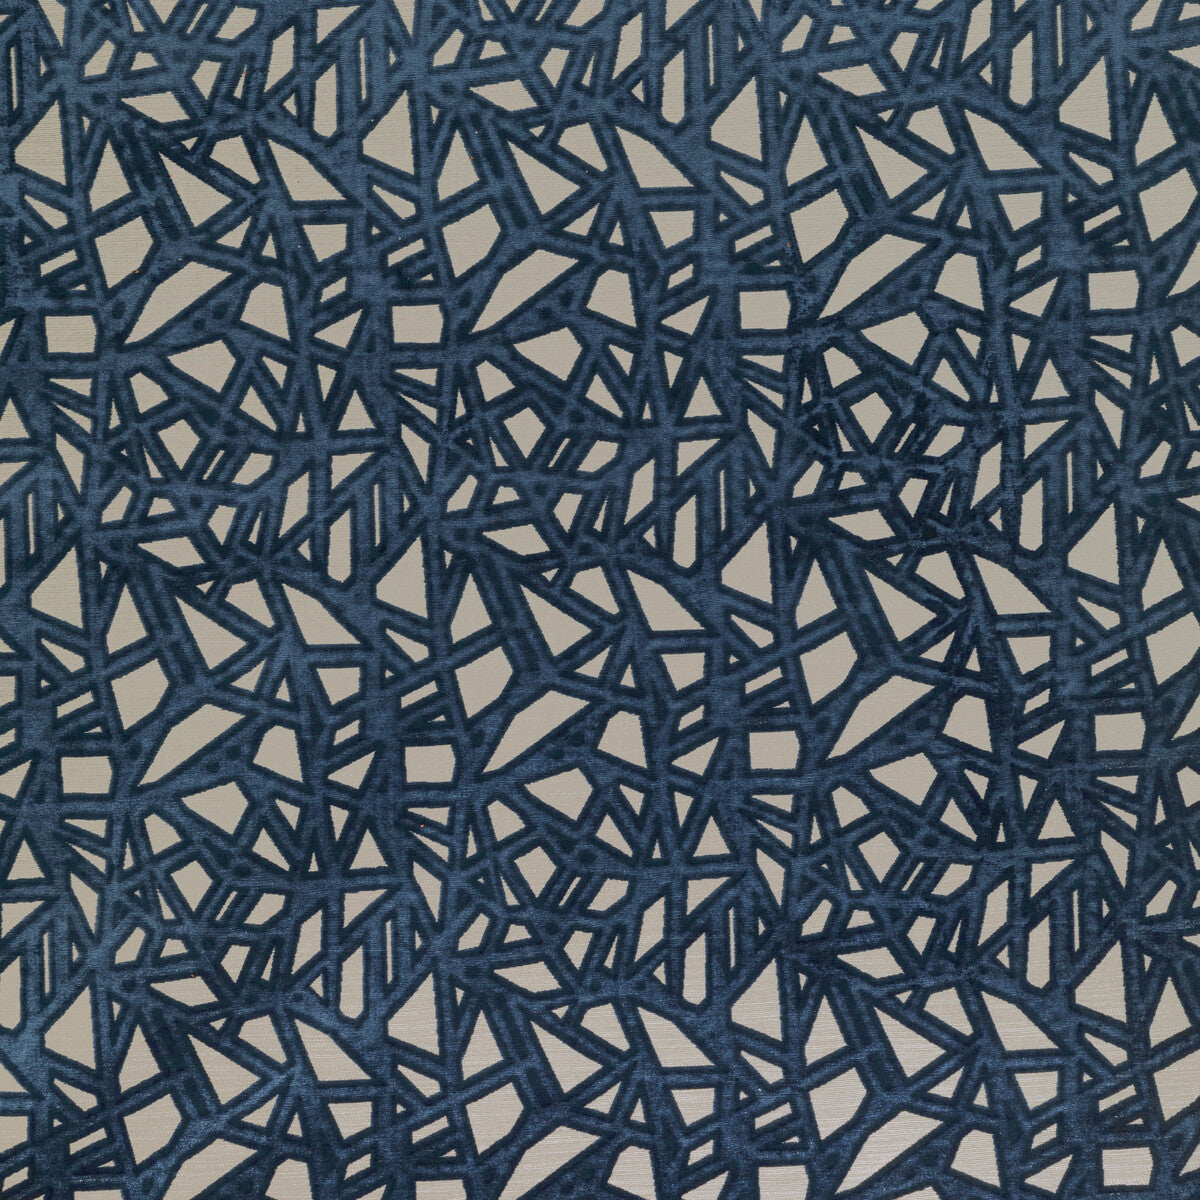 Kravet Design fabric in 36277-5 color - pattern 36277.5.0 - by Kravet Design